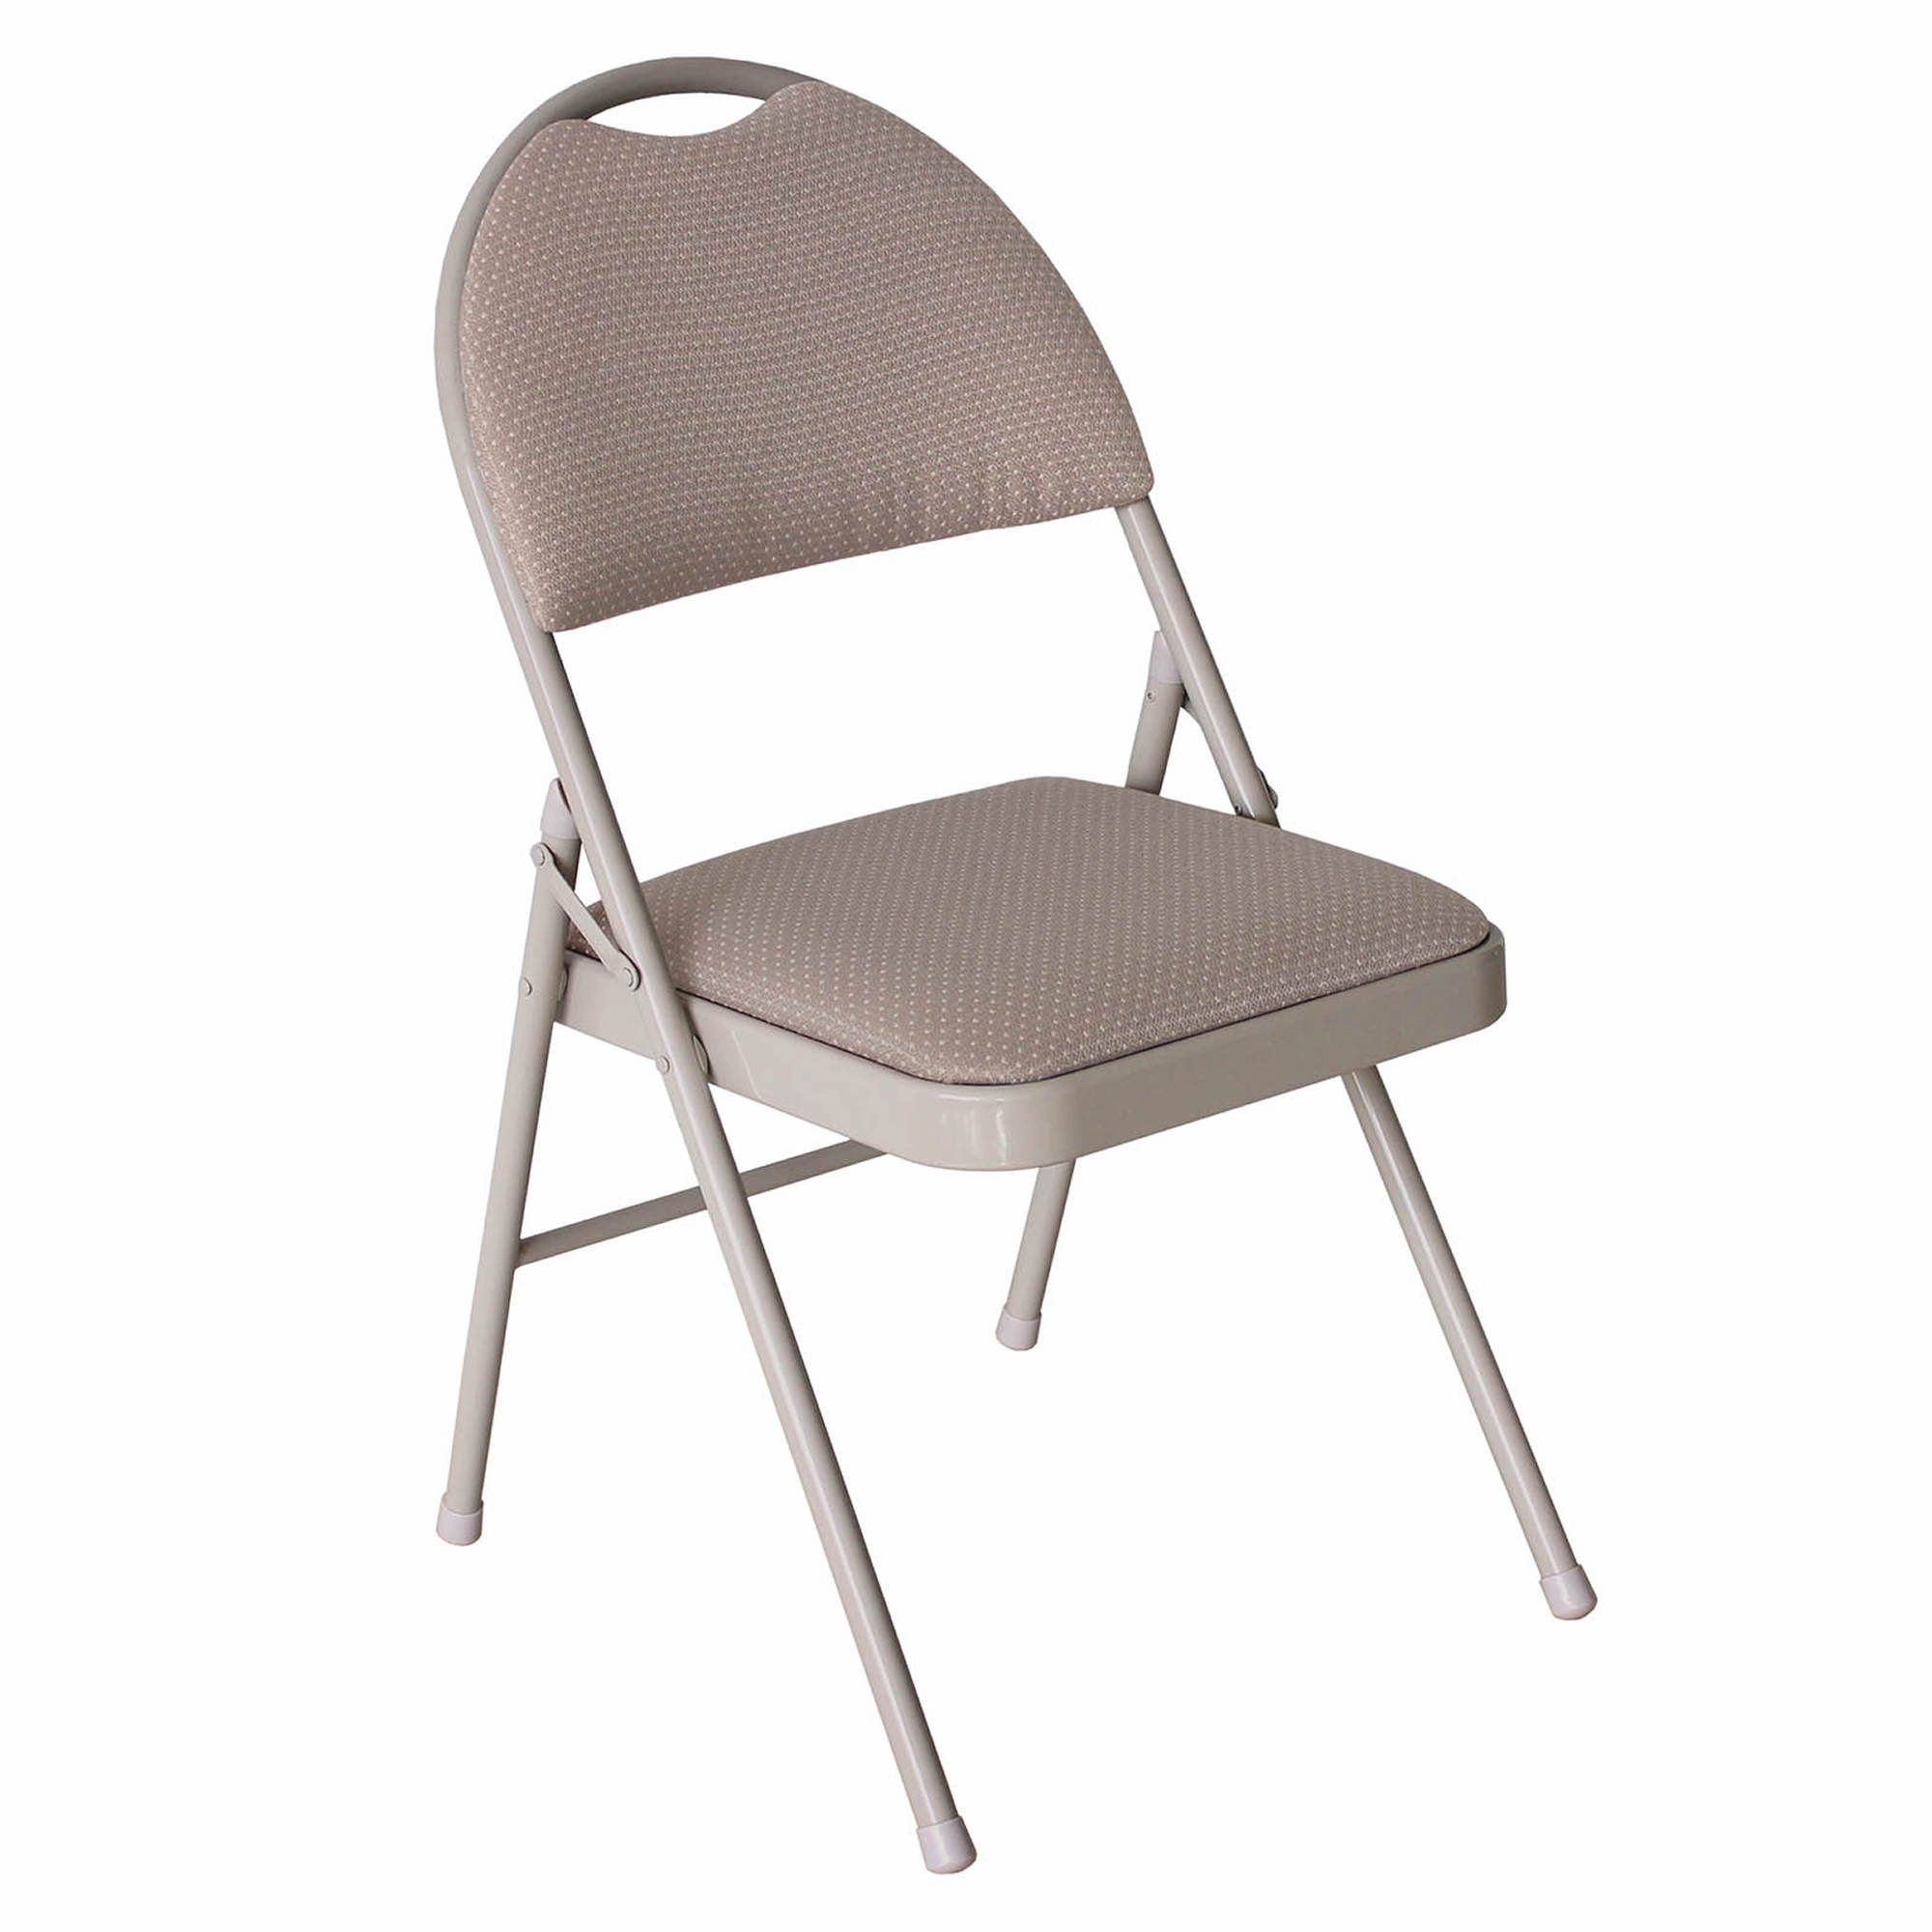 Berkley Jensen Folding Chair - Gray - BJs WholeSale Club